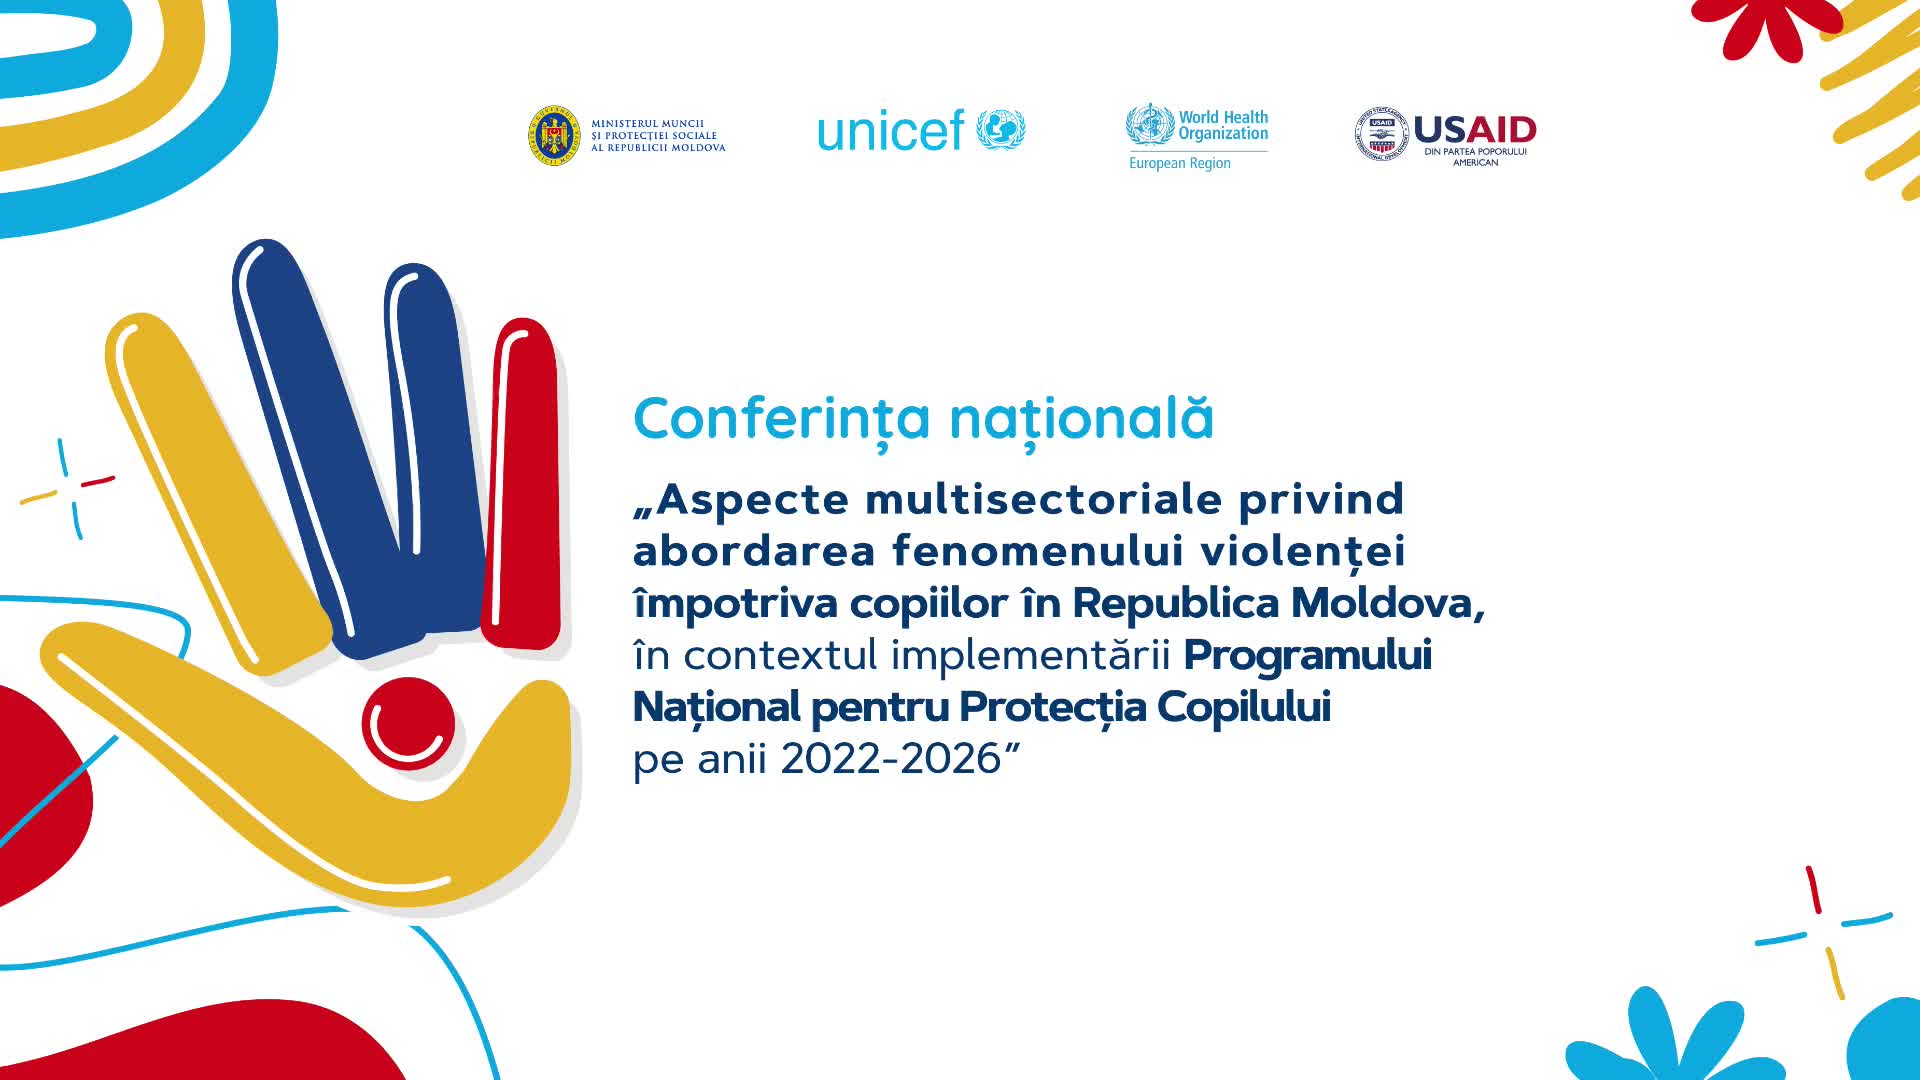 Conferința naționalǎ „Aspecte multisectoriale privind abordarea fenomenului violenței împotriva copiilor în Republica Moldova, în contextul implementării Programului Național pentru Protecția Copilului pe anii 2022-2026”